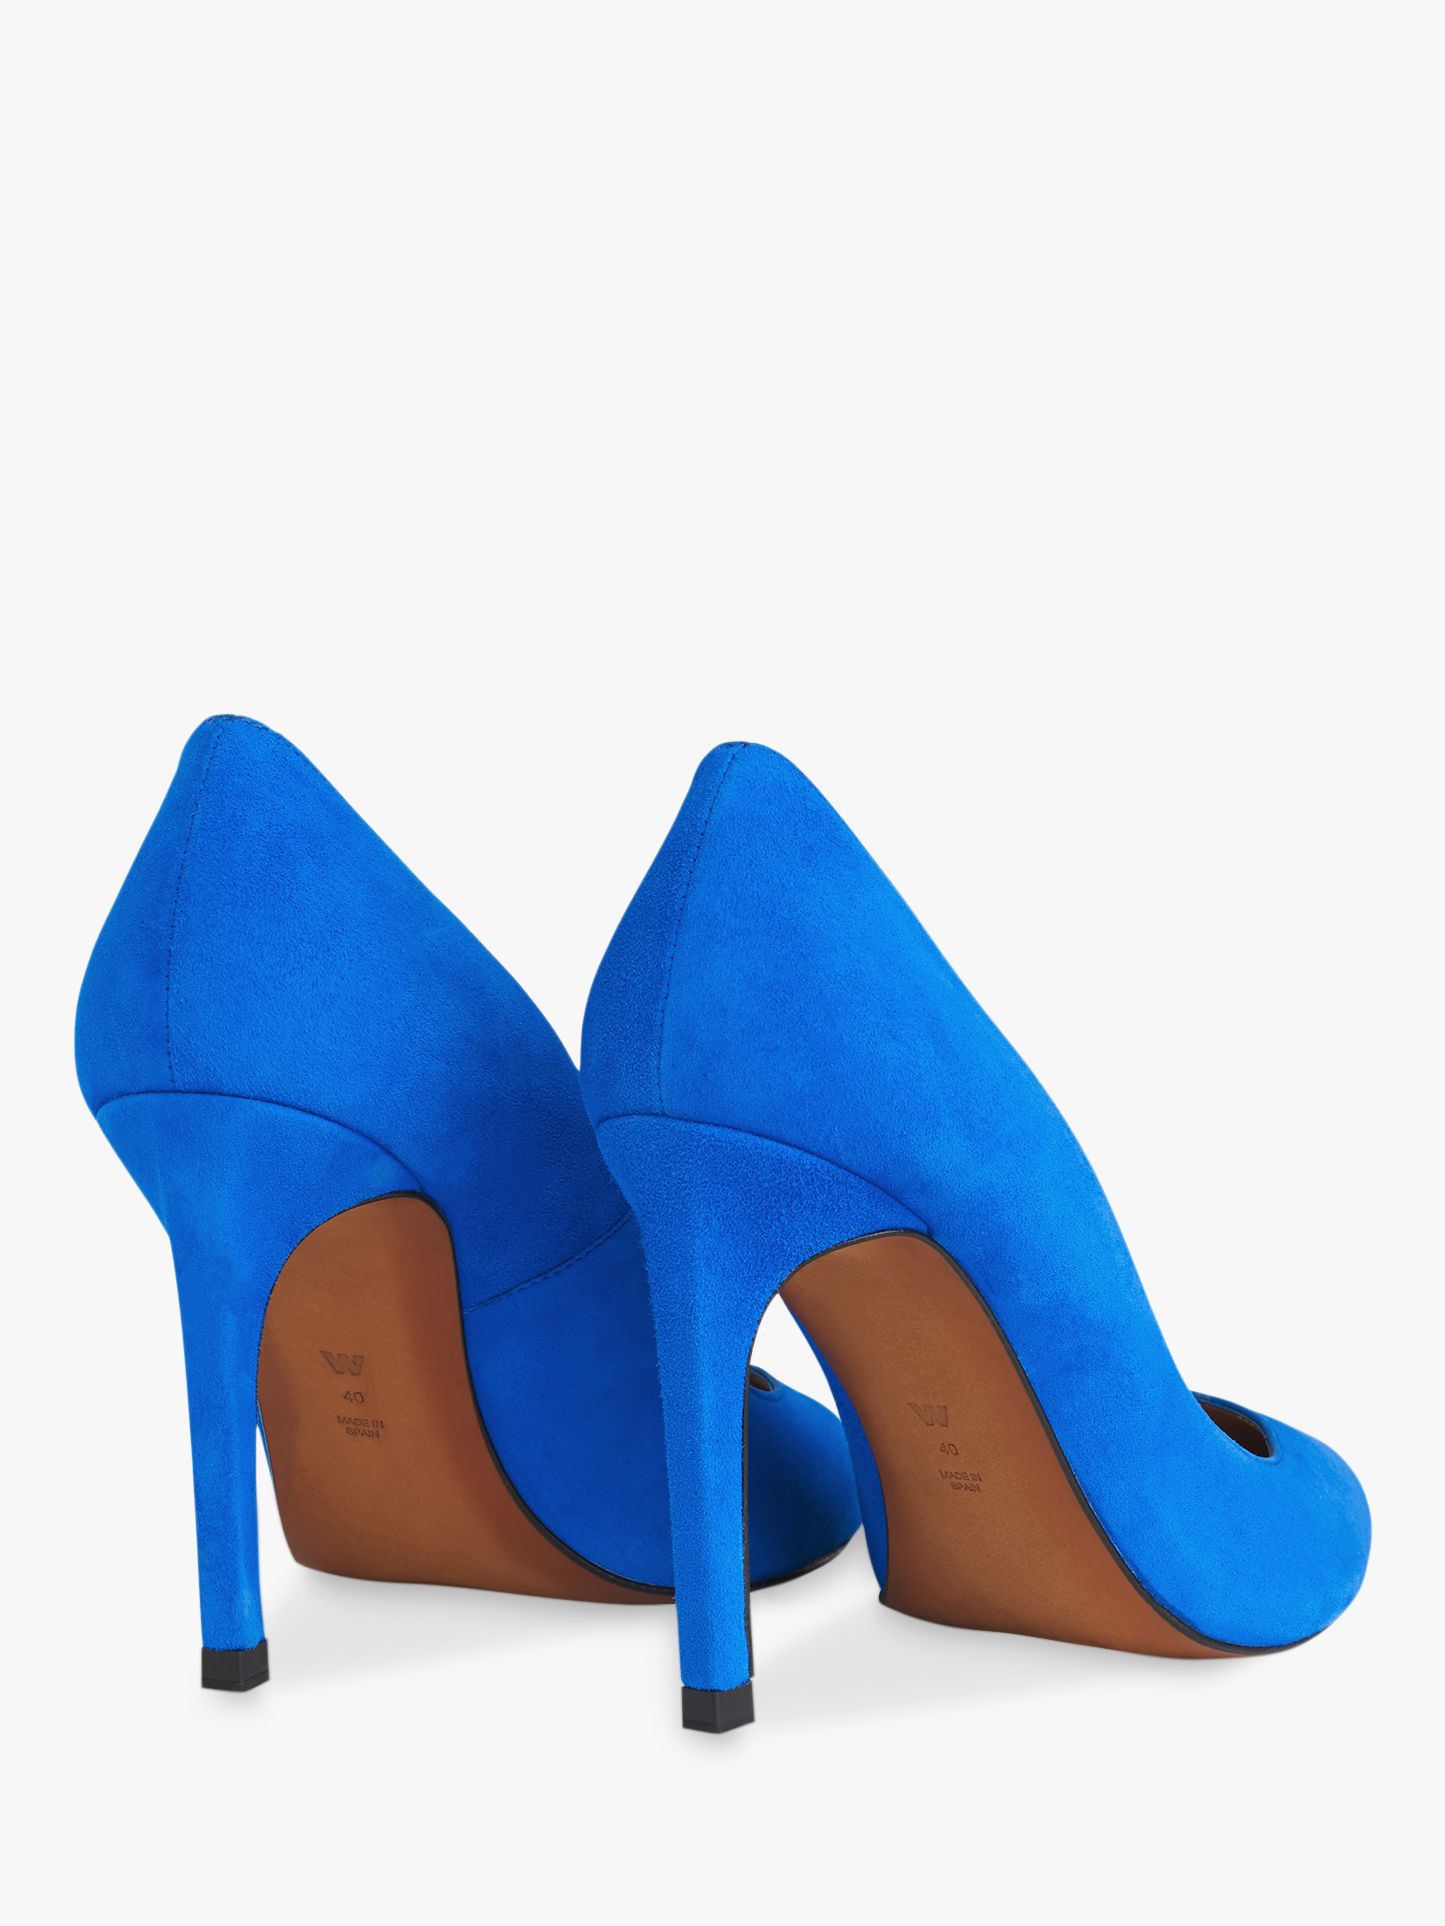 blue suede court shoes